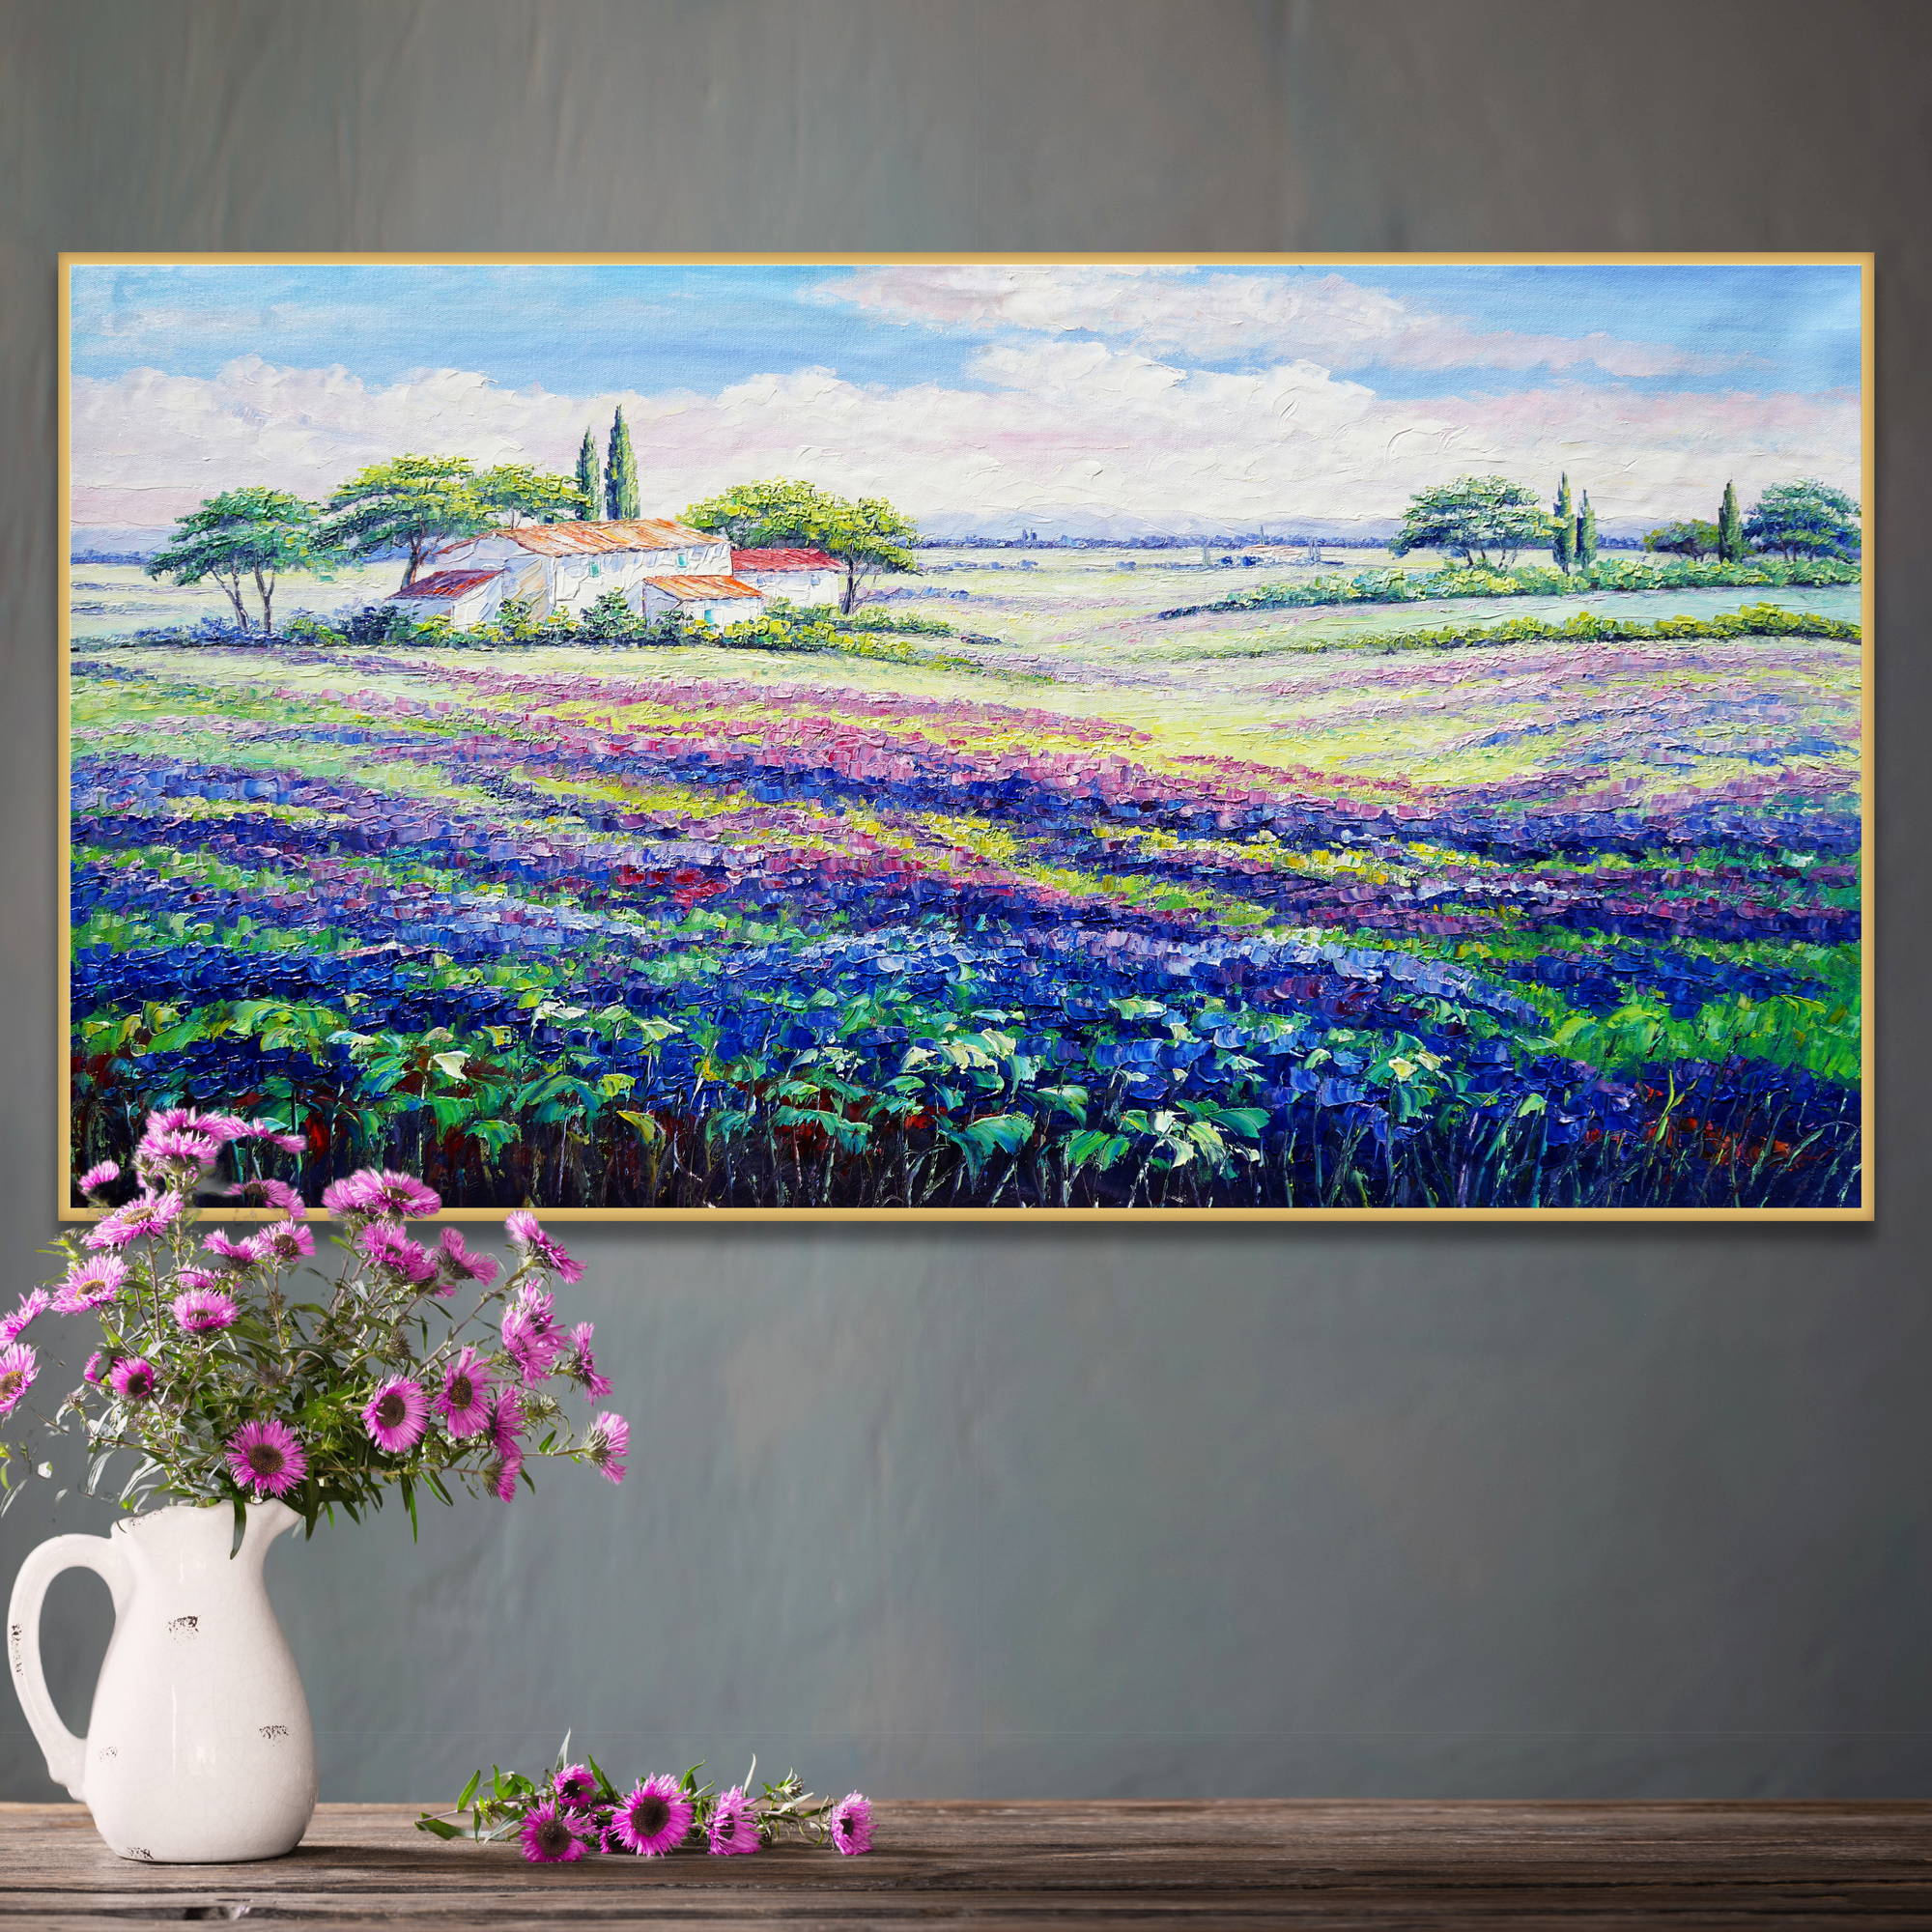 Dipinto a olio di campi di lavanda in fiore e abitazione rurale sotto un cielo azzurro.